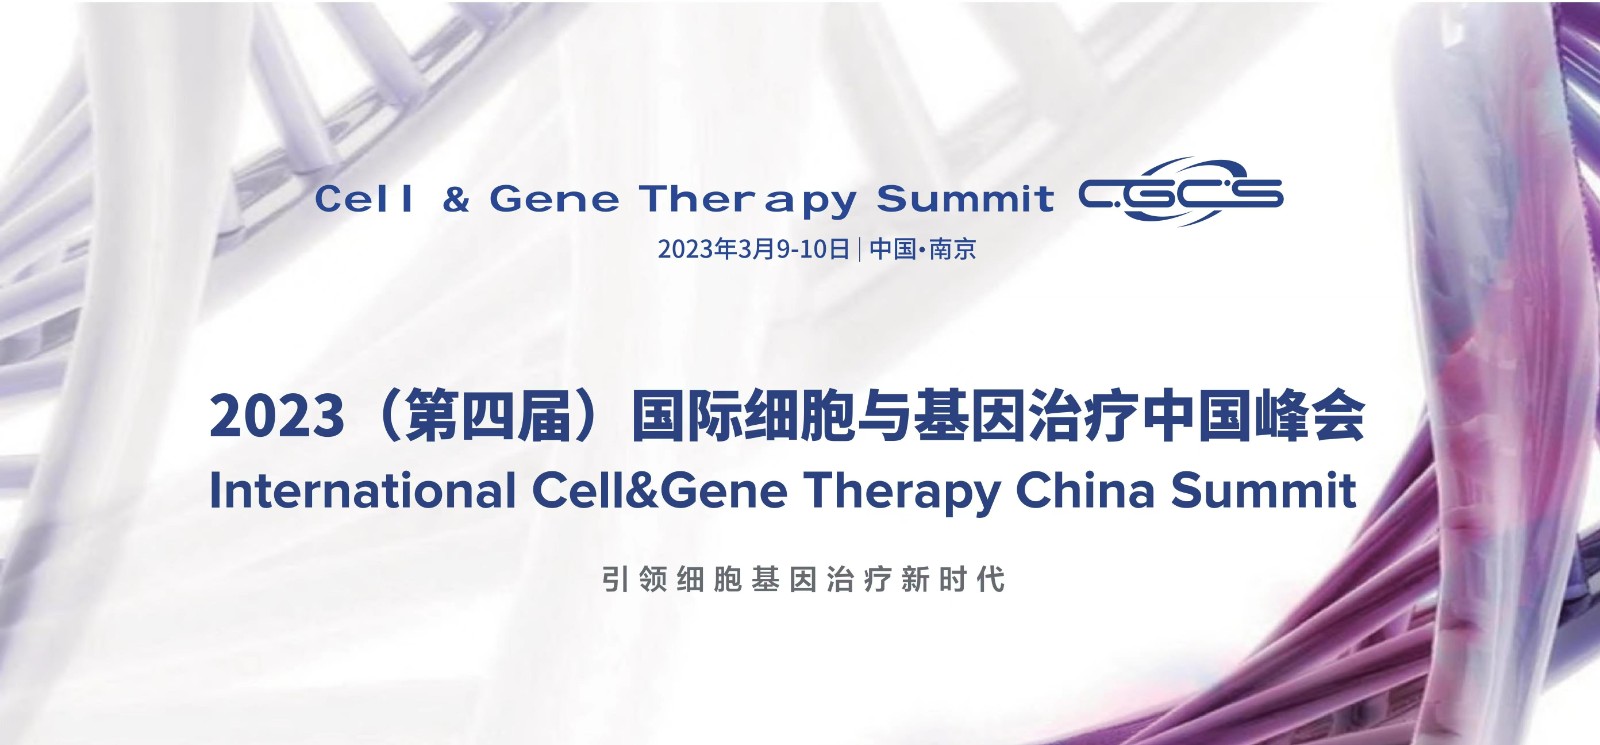 CGCS2023国际细胞与基因治疗中国峰会相约南京